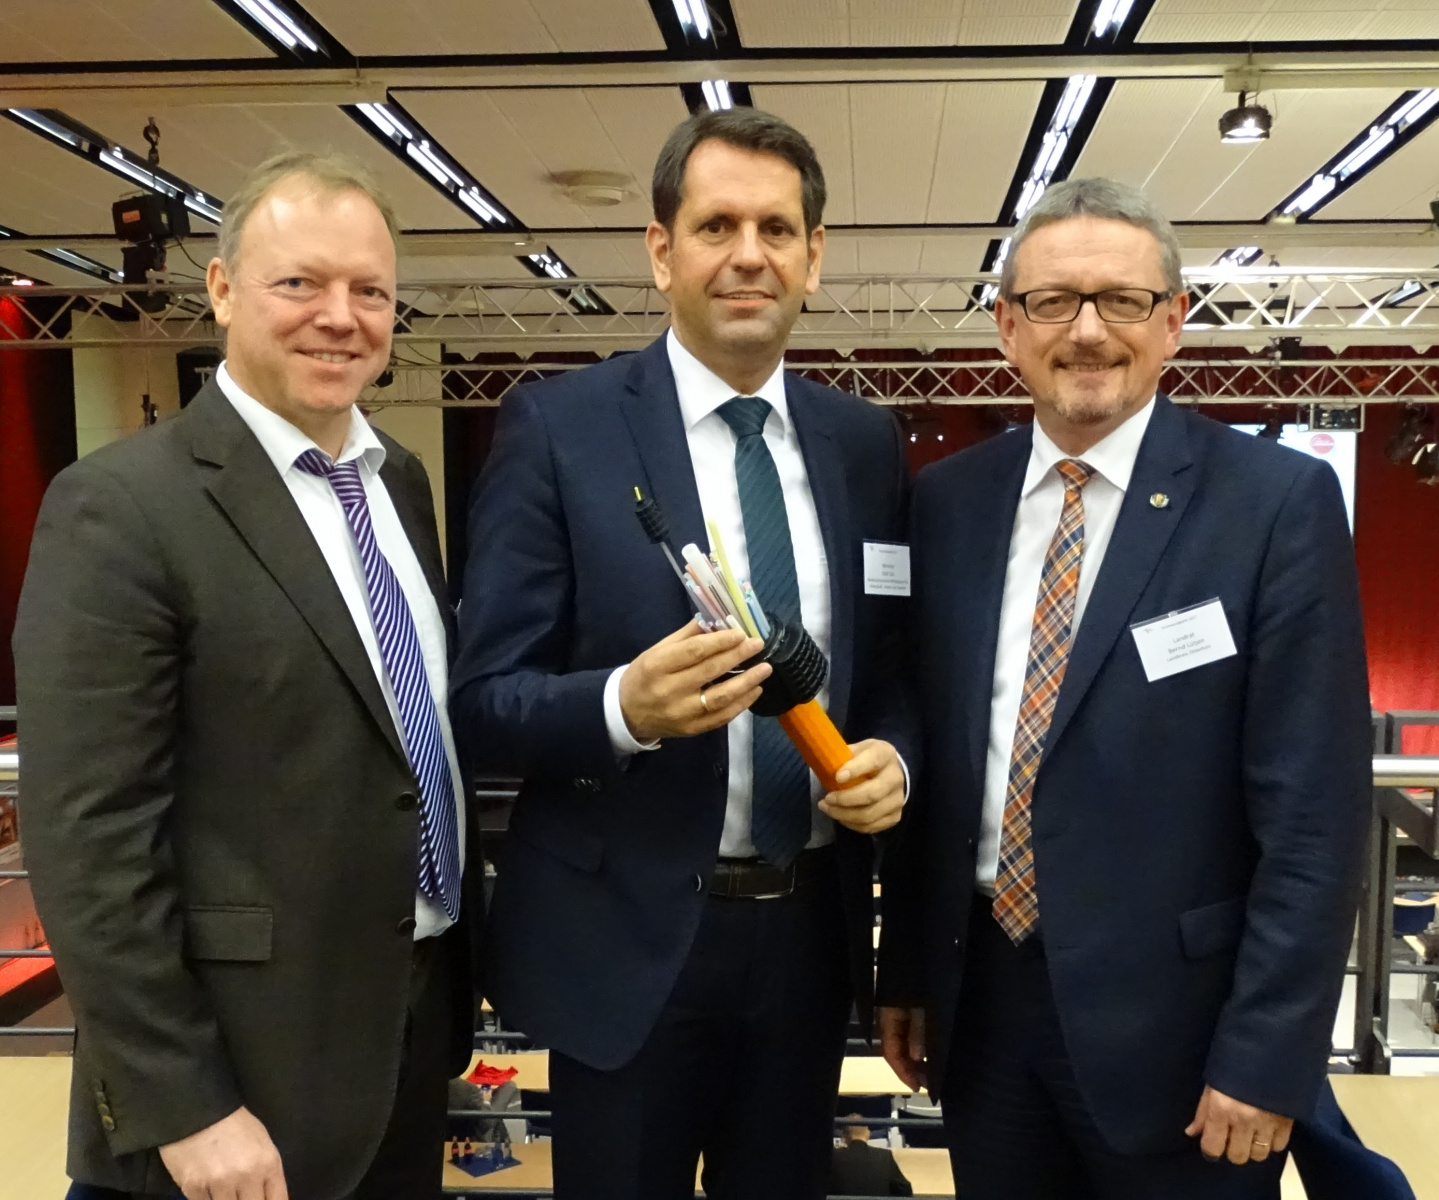 Kommunaler Breitbandmarktplatz (2017) mit Wirtschaftsminister Olaf Lies und Peer Beyersdorff vom Breitbandzentrum